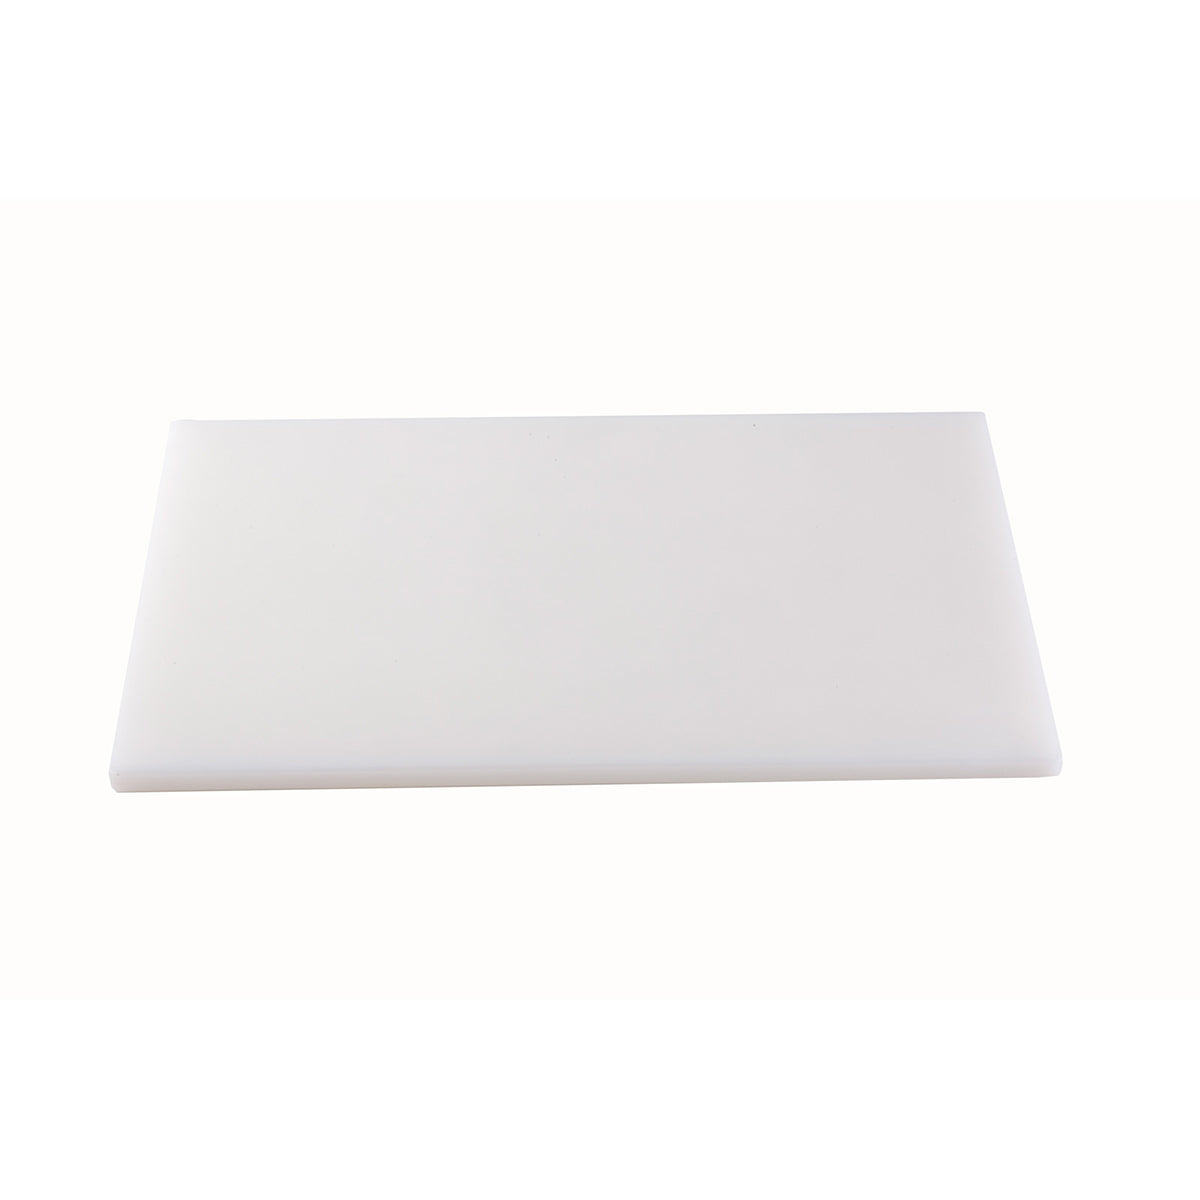 Tabla para Picar de Plástico Blanca de 38 x 51 cm NFS